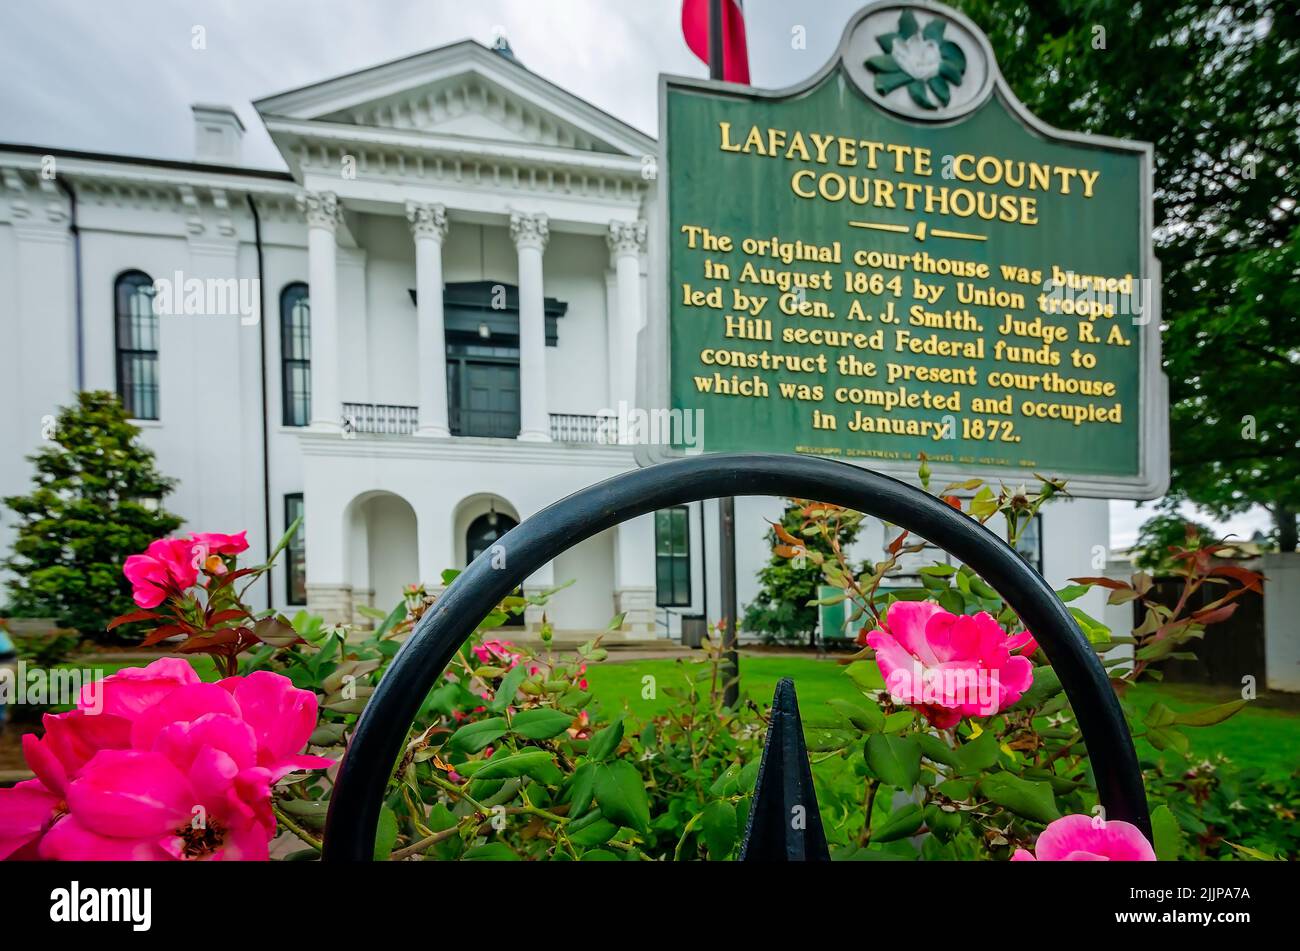 El Lafayette County Courthouse es retratada en Courthouse Square, el 31 de mayo de 2015, en Oxford, Mississippi. Foto de stock